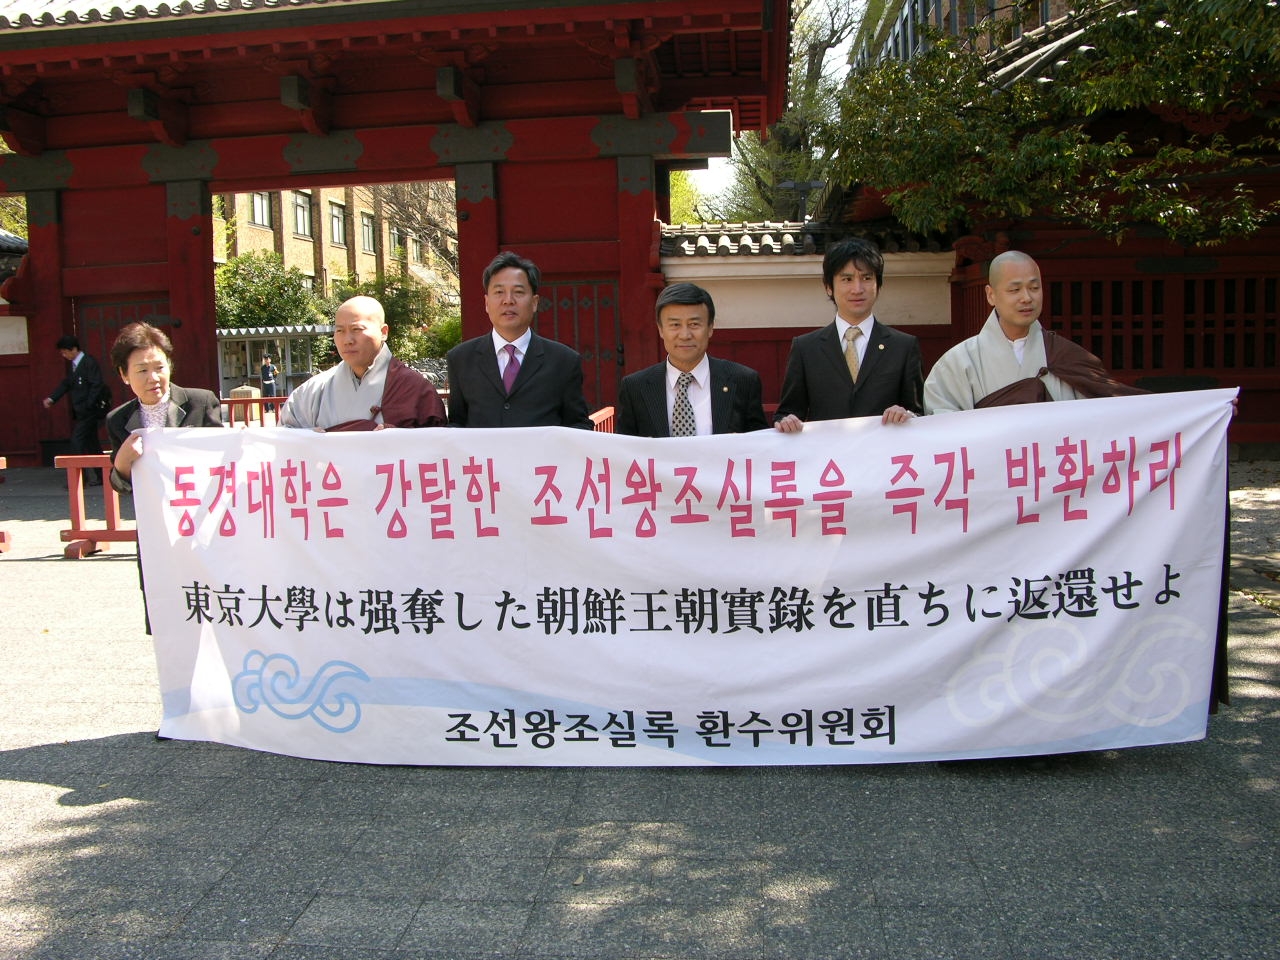 2006년 <조선왕조실록> 환수위원회가 도쿄대학교의 상징 아까몽(赤門) 앞에서 기자회견을 하고 있다. 